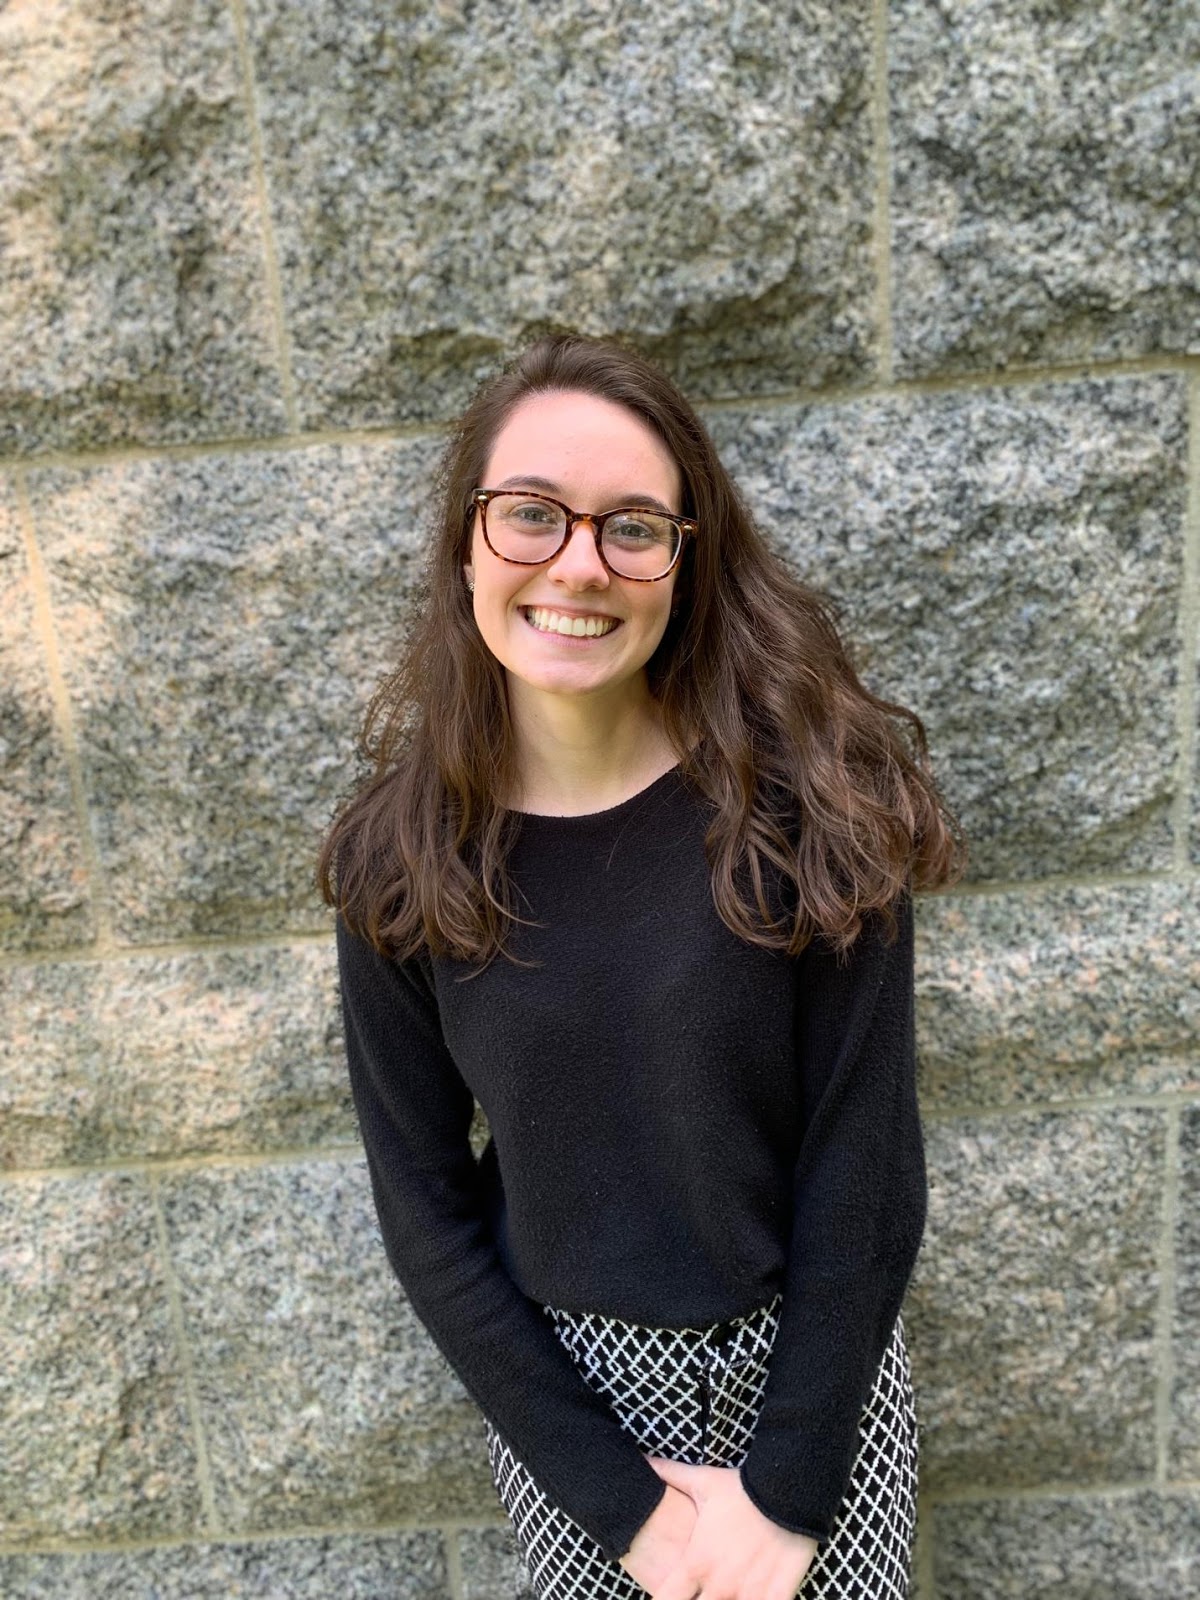 Student Spotlight: Meet Megan Gray!